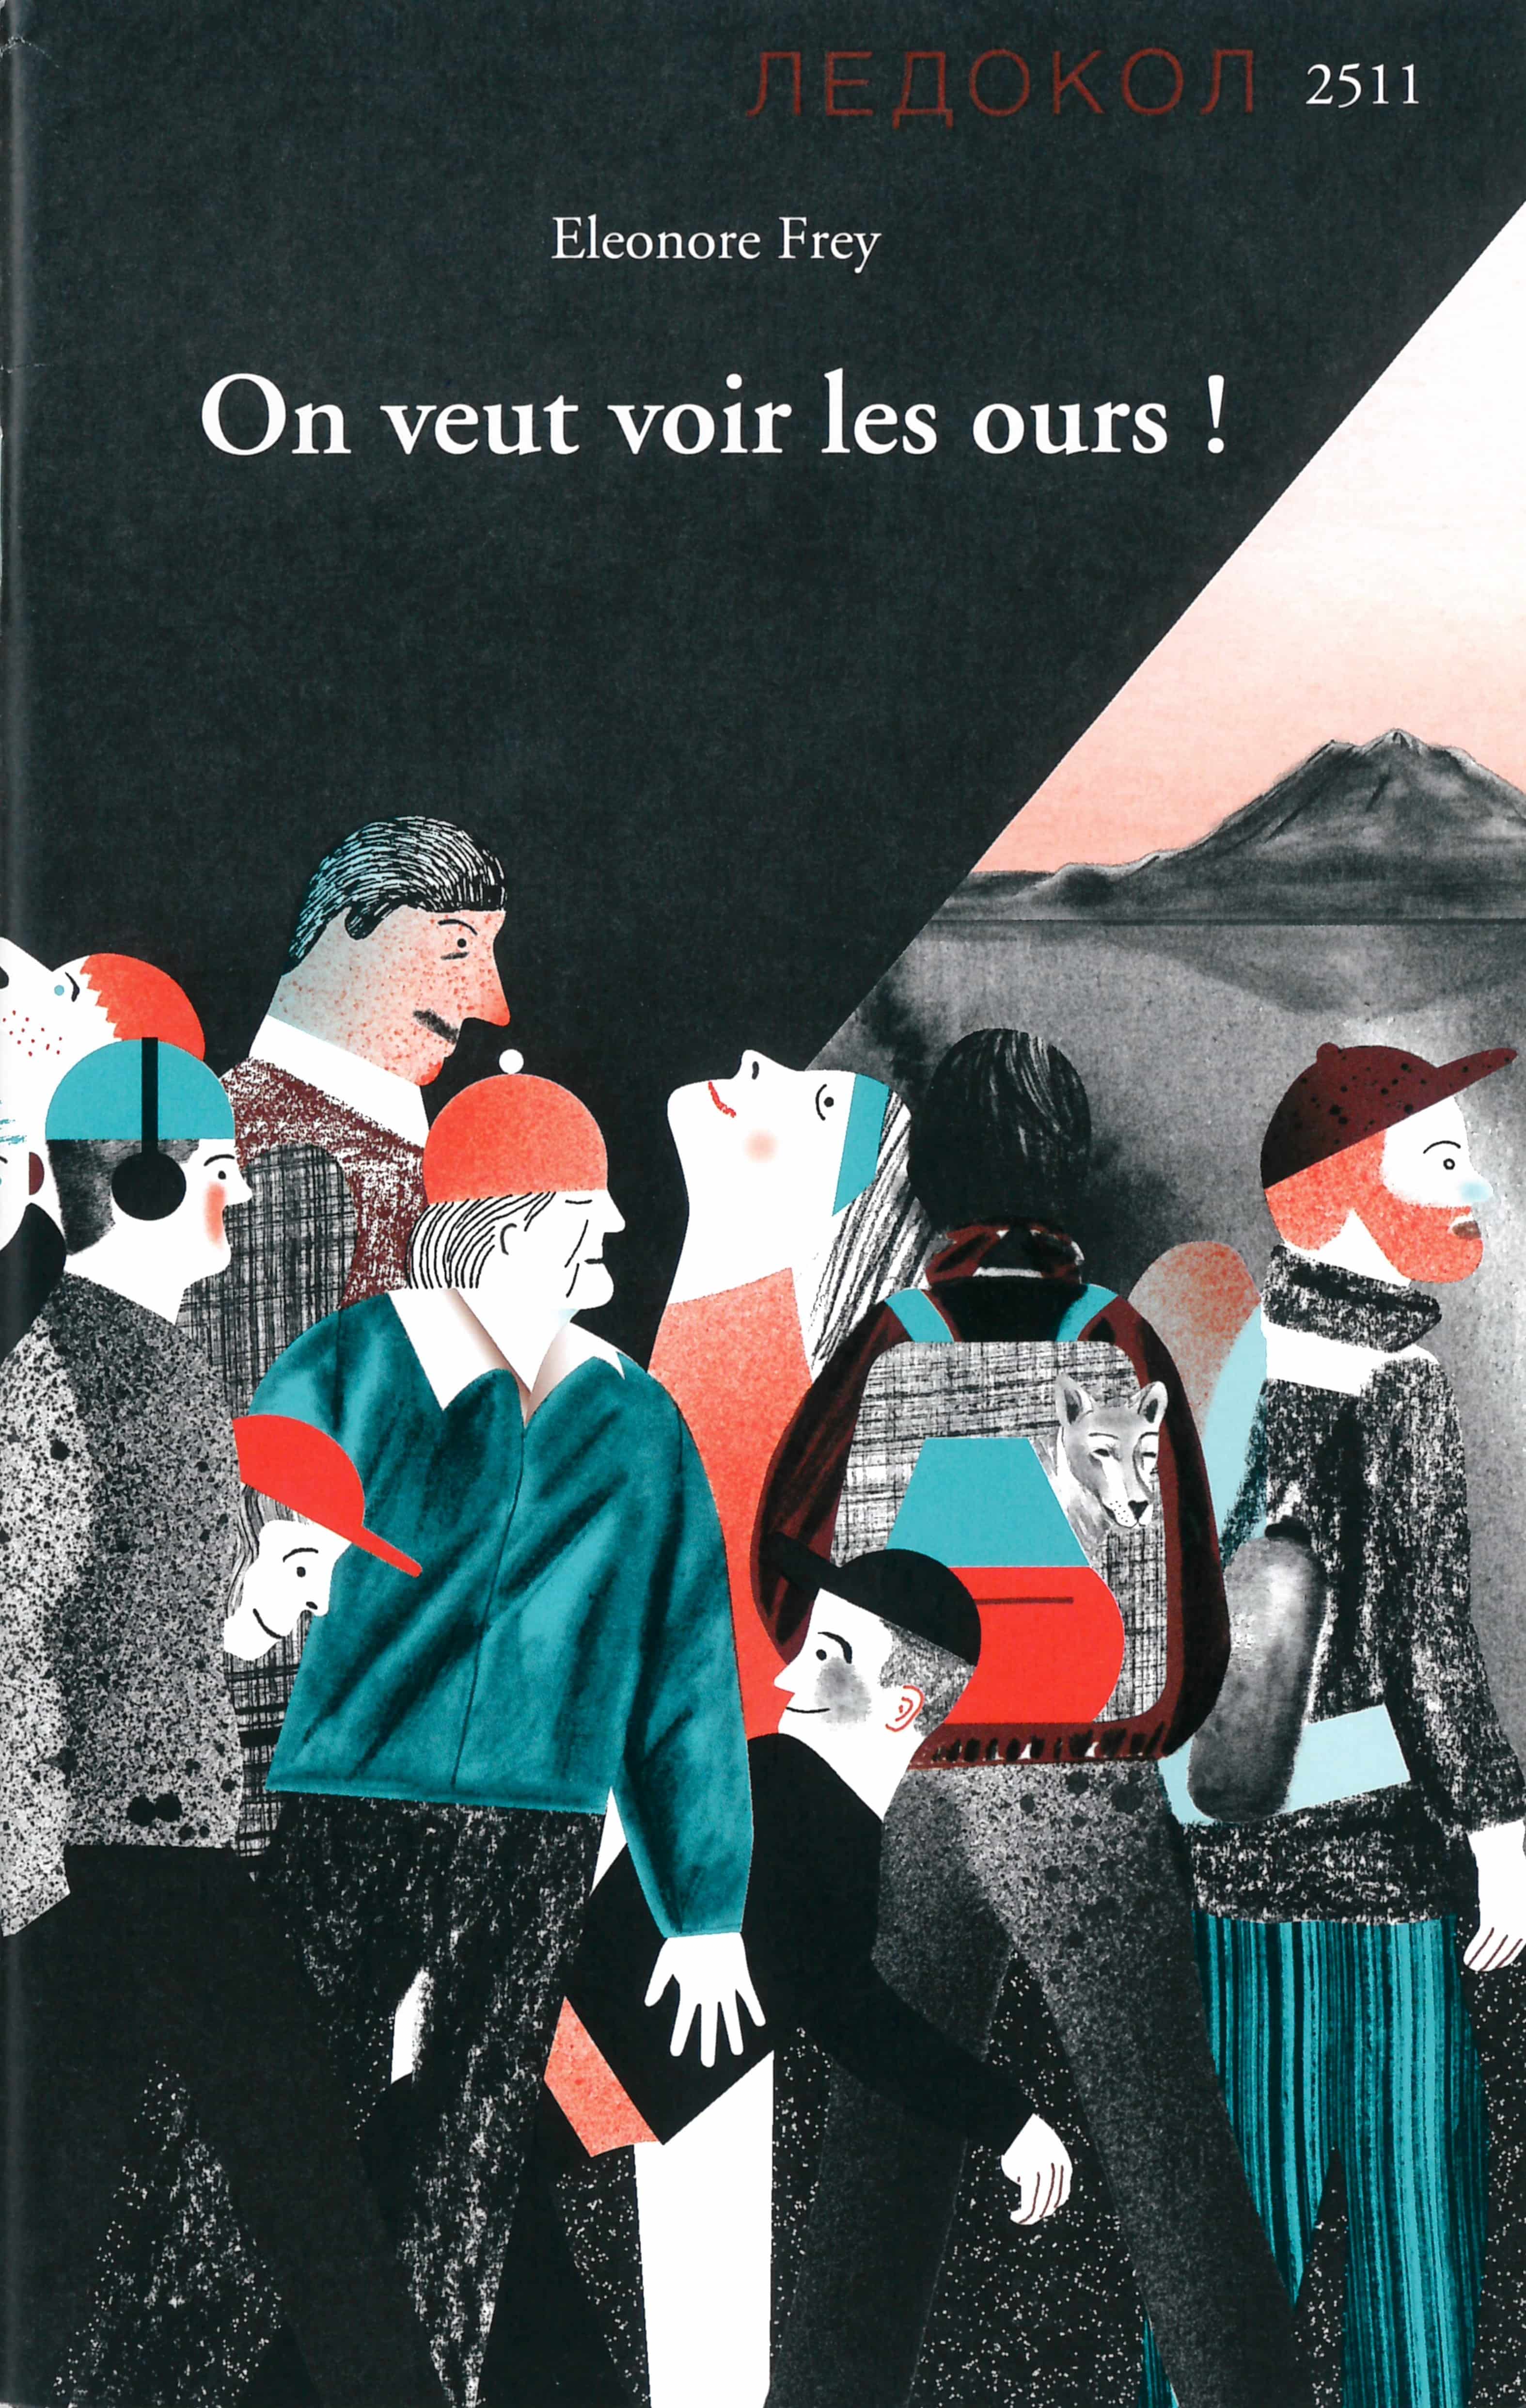 On veut voir les ours!, un livre d’Eleonore Frey, illustré par It's raining elephants, éditions de l'OSL, fantastique